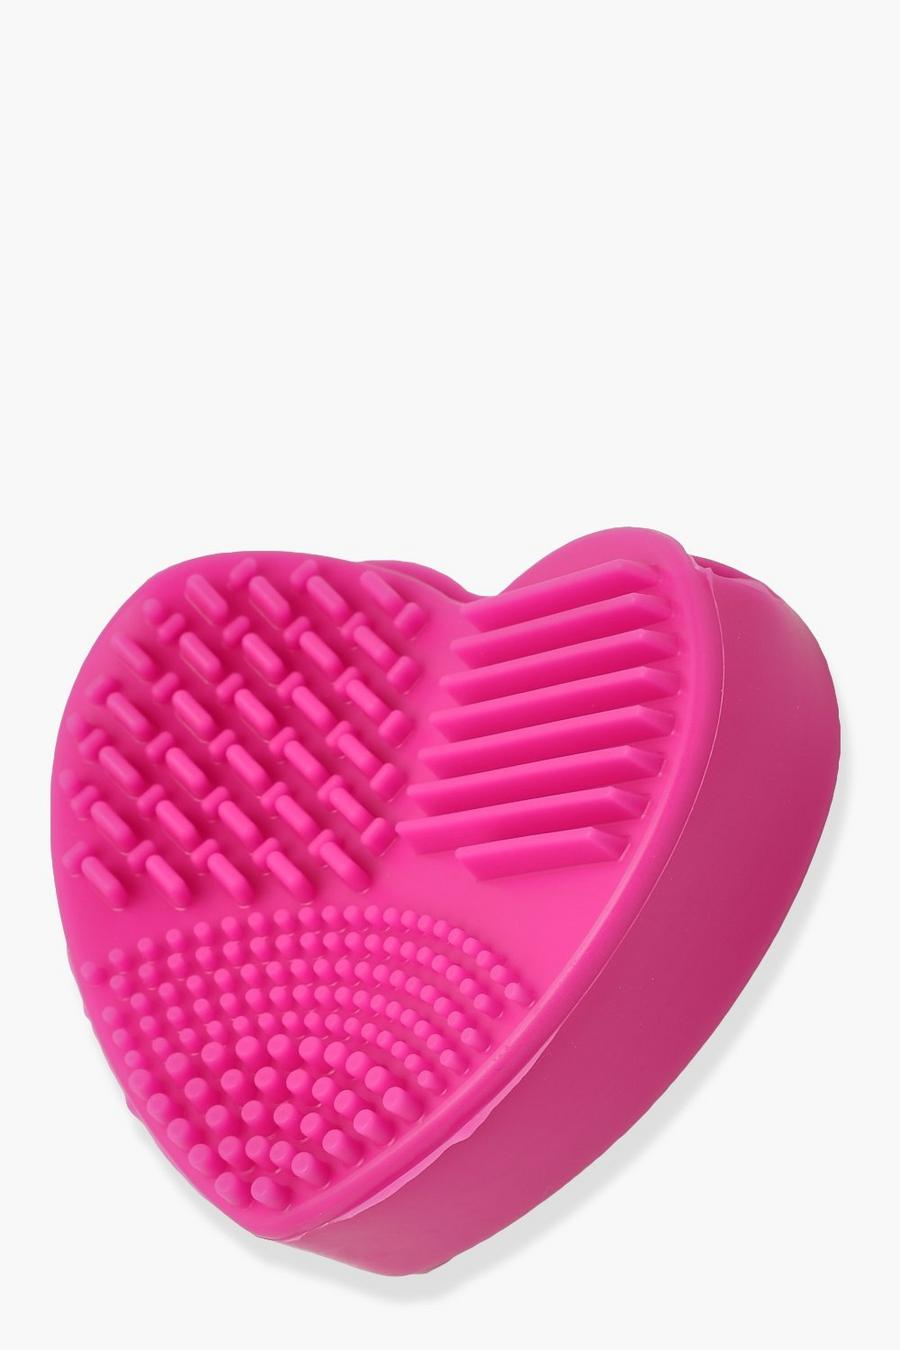 Almohadilla de limpieza de cepillos de maquillaje con forma de corazón, Baby pink image number 1